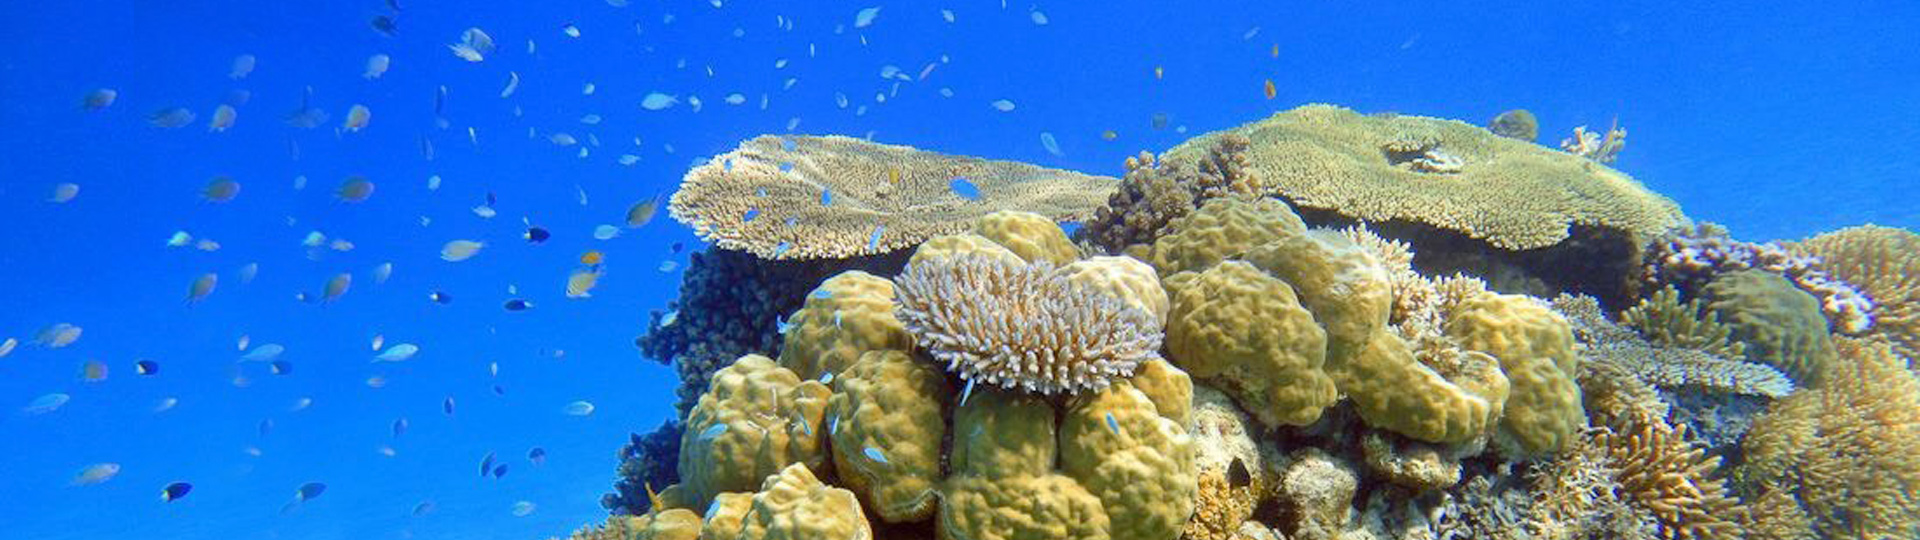 萬象硬珊瑚區 